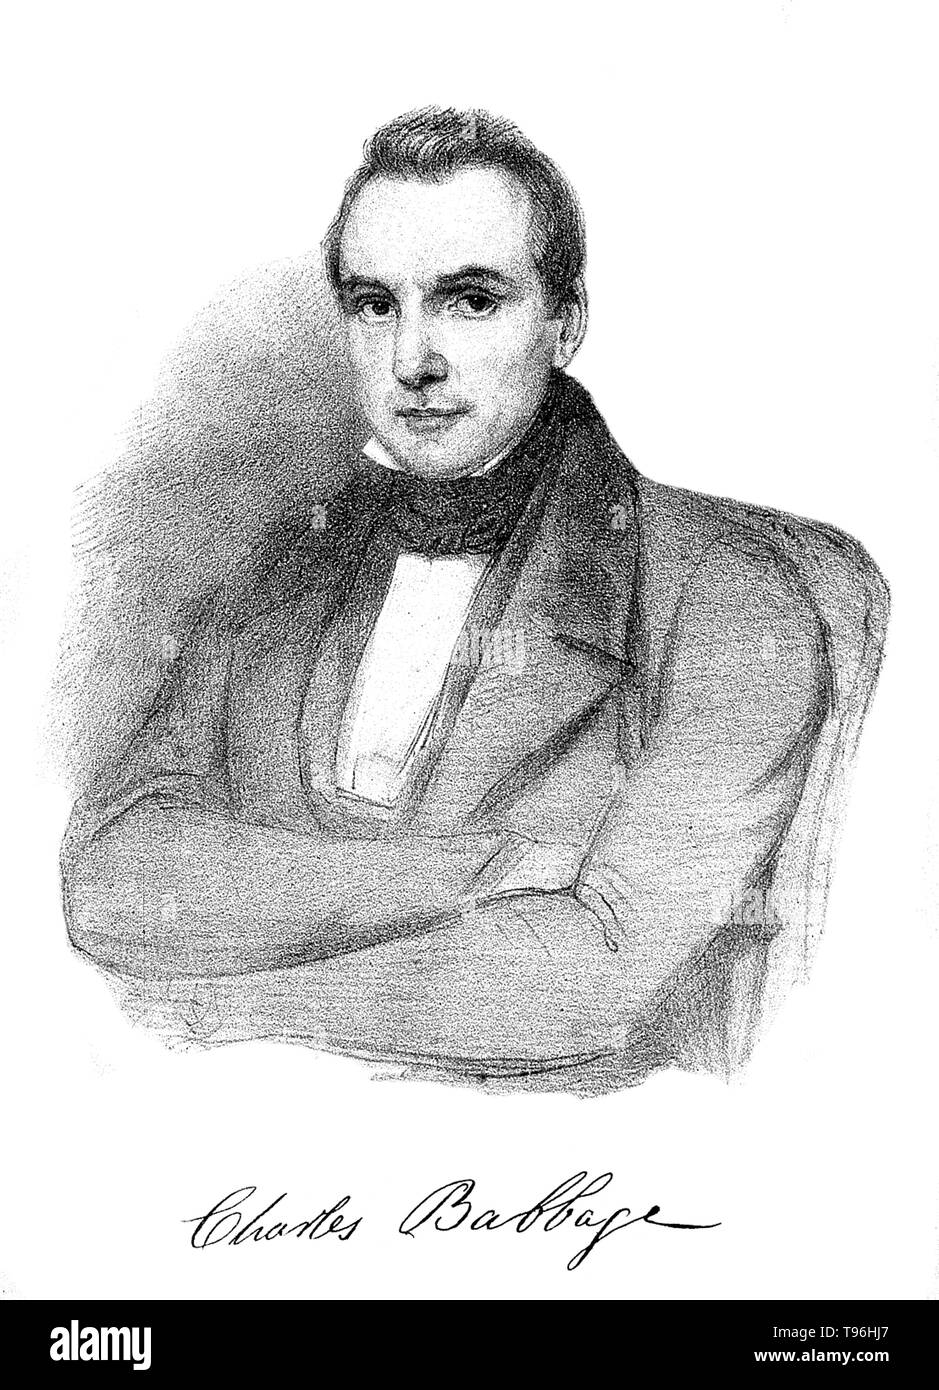 Charles Babbage (Dezember 26, 1791 - Oktober 18, 1871) war ein englischer Universalgelehrten. Ein Mathematiker, Philosoph, Erfinder und Ingenieur Mechanisches, er ist am besten für Ursprung das Konzept einer Digitale programmierbare Computer gedacht. Stockfoto